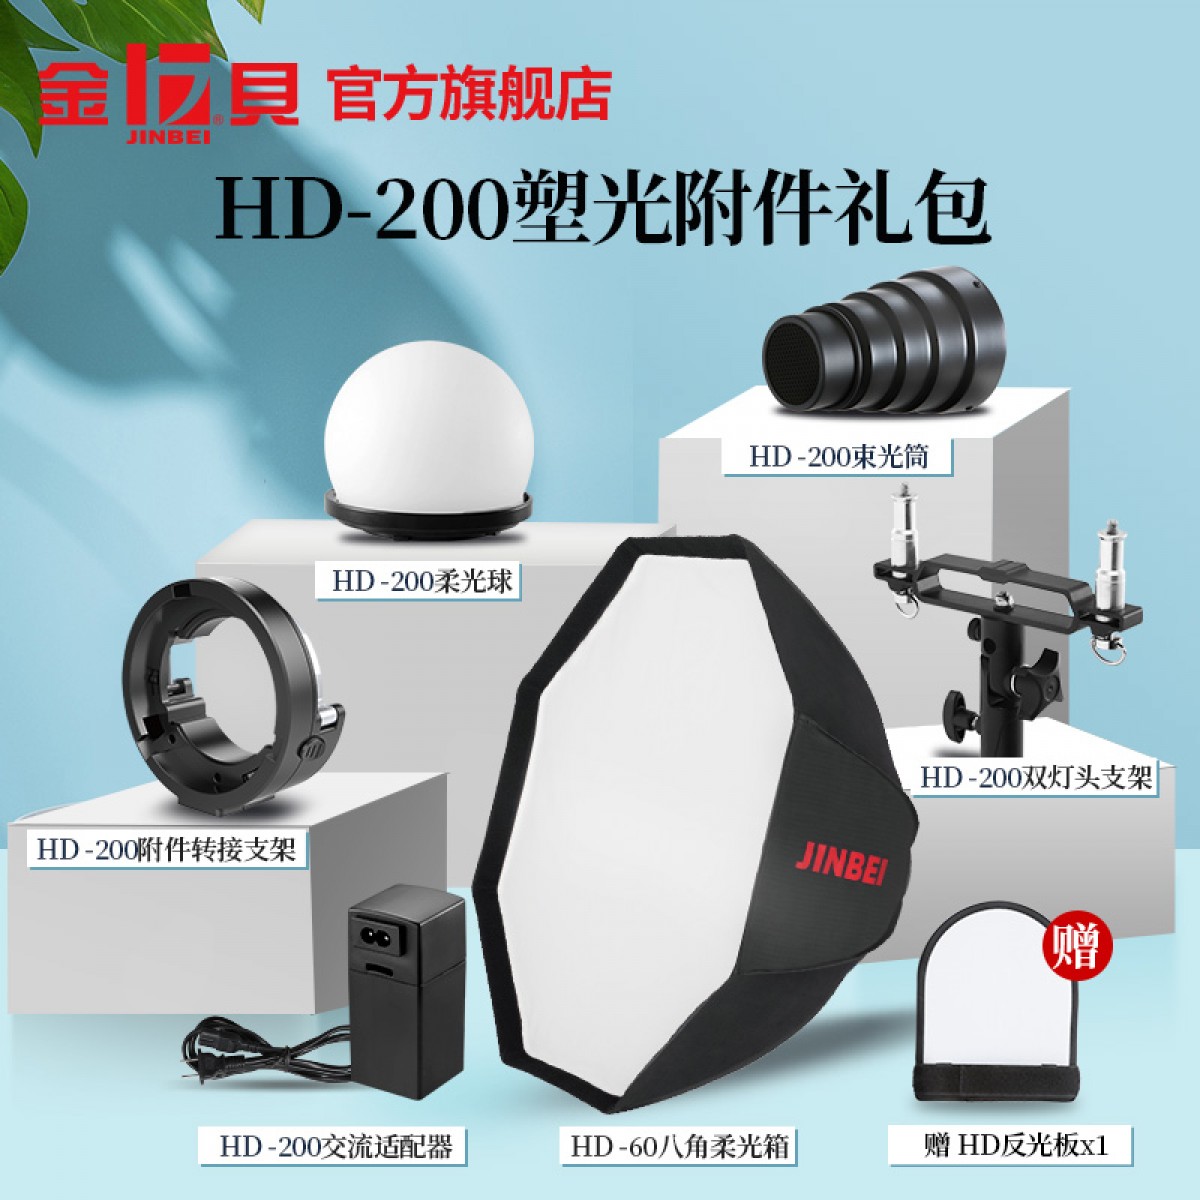 金贝HD-200pro便携高速外拍灯适配附件柔光球束光筒转接环适配器